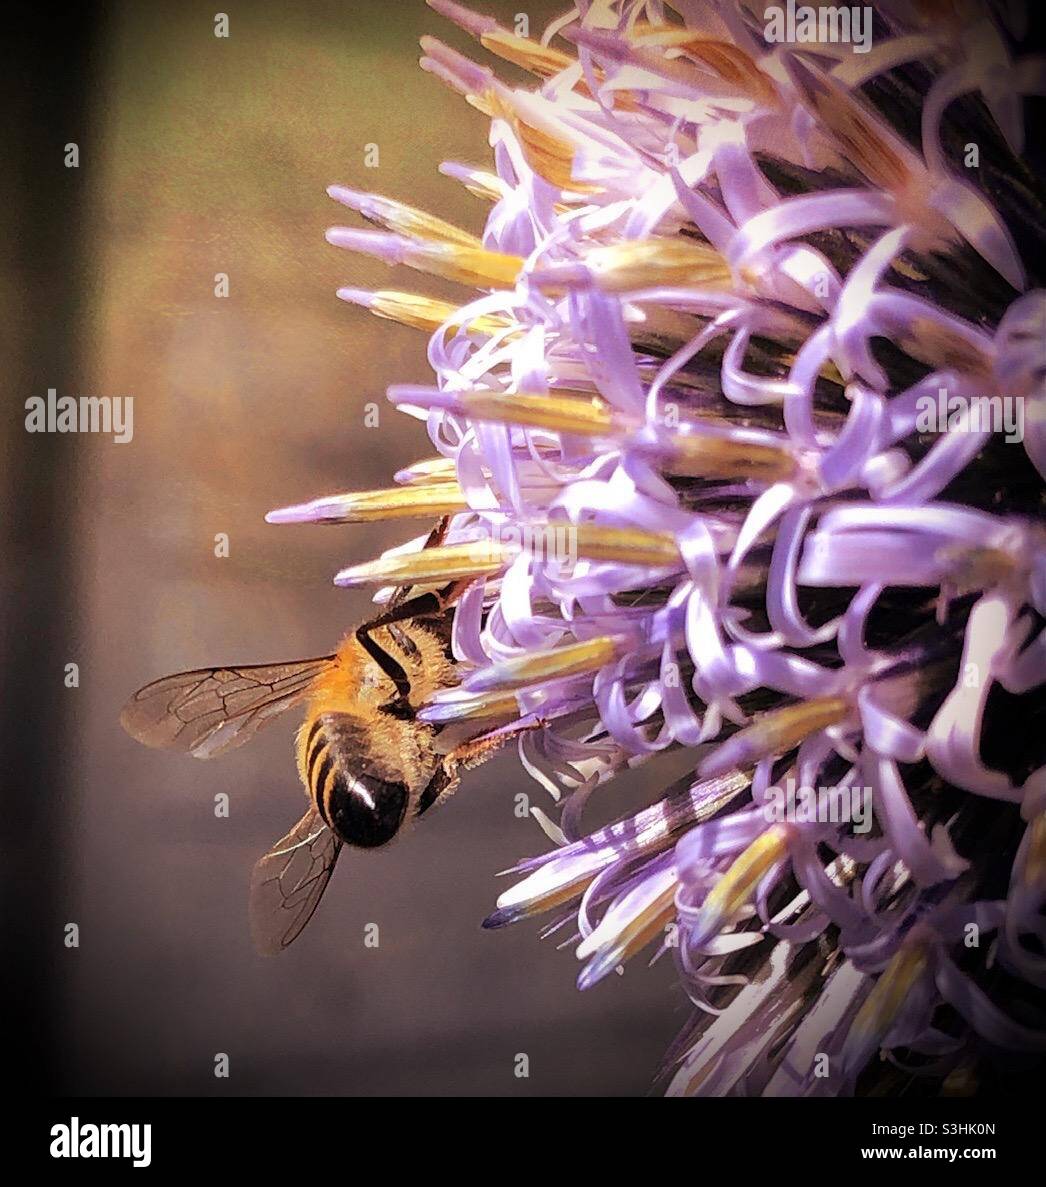 Bee taking nectar from Echinops flowers Stock Photo